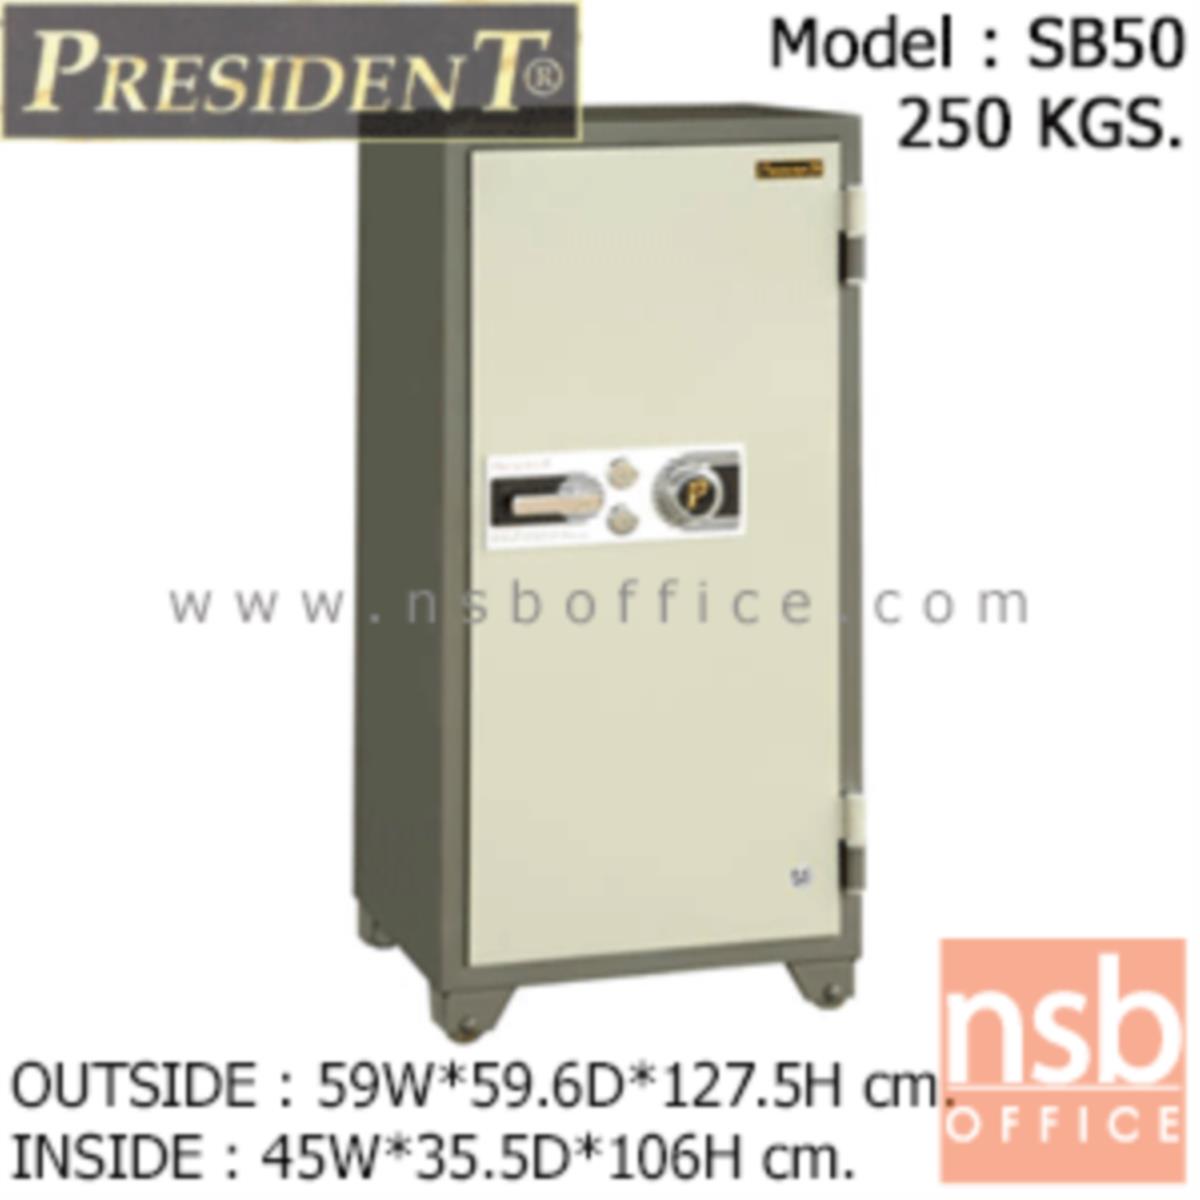 ตู้เซฟนิรภัยชนิดหมุน 250 กก.   รุ่น PRESIDENT-SB50 มี 2 กุญแจ 1 รหัส (รหัสใช้หมุนหน้าตู้)